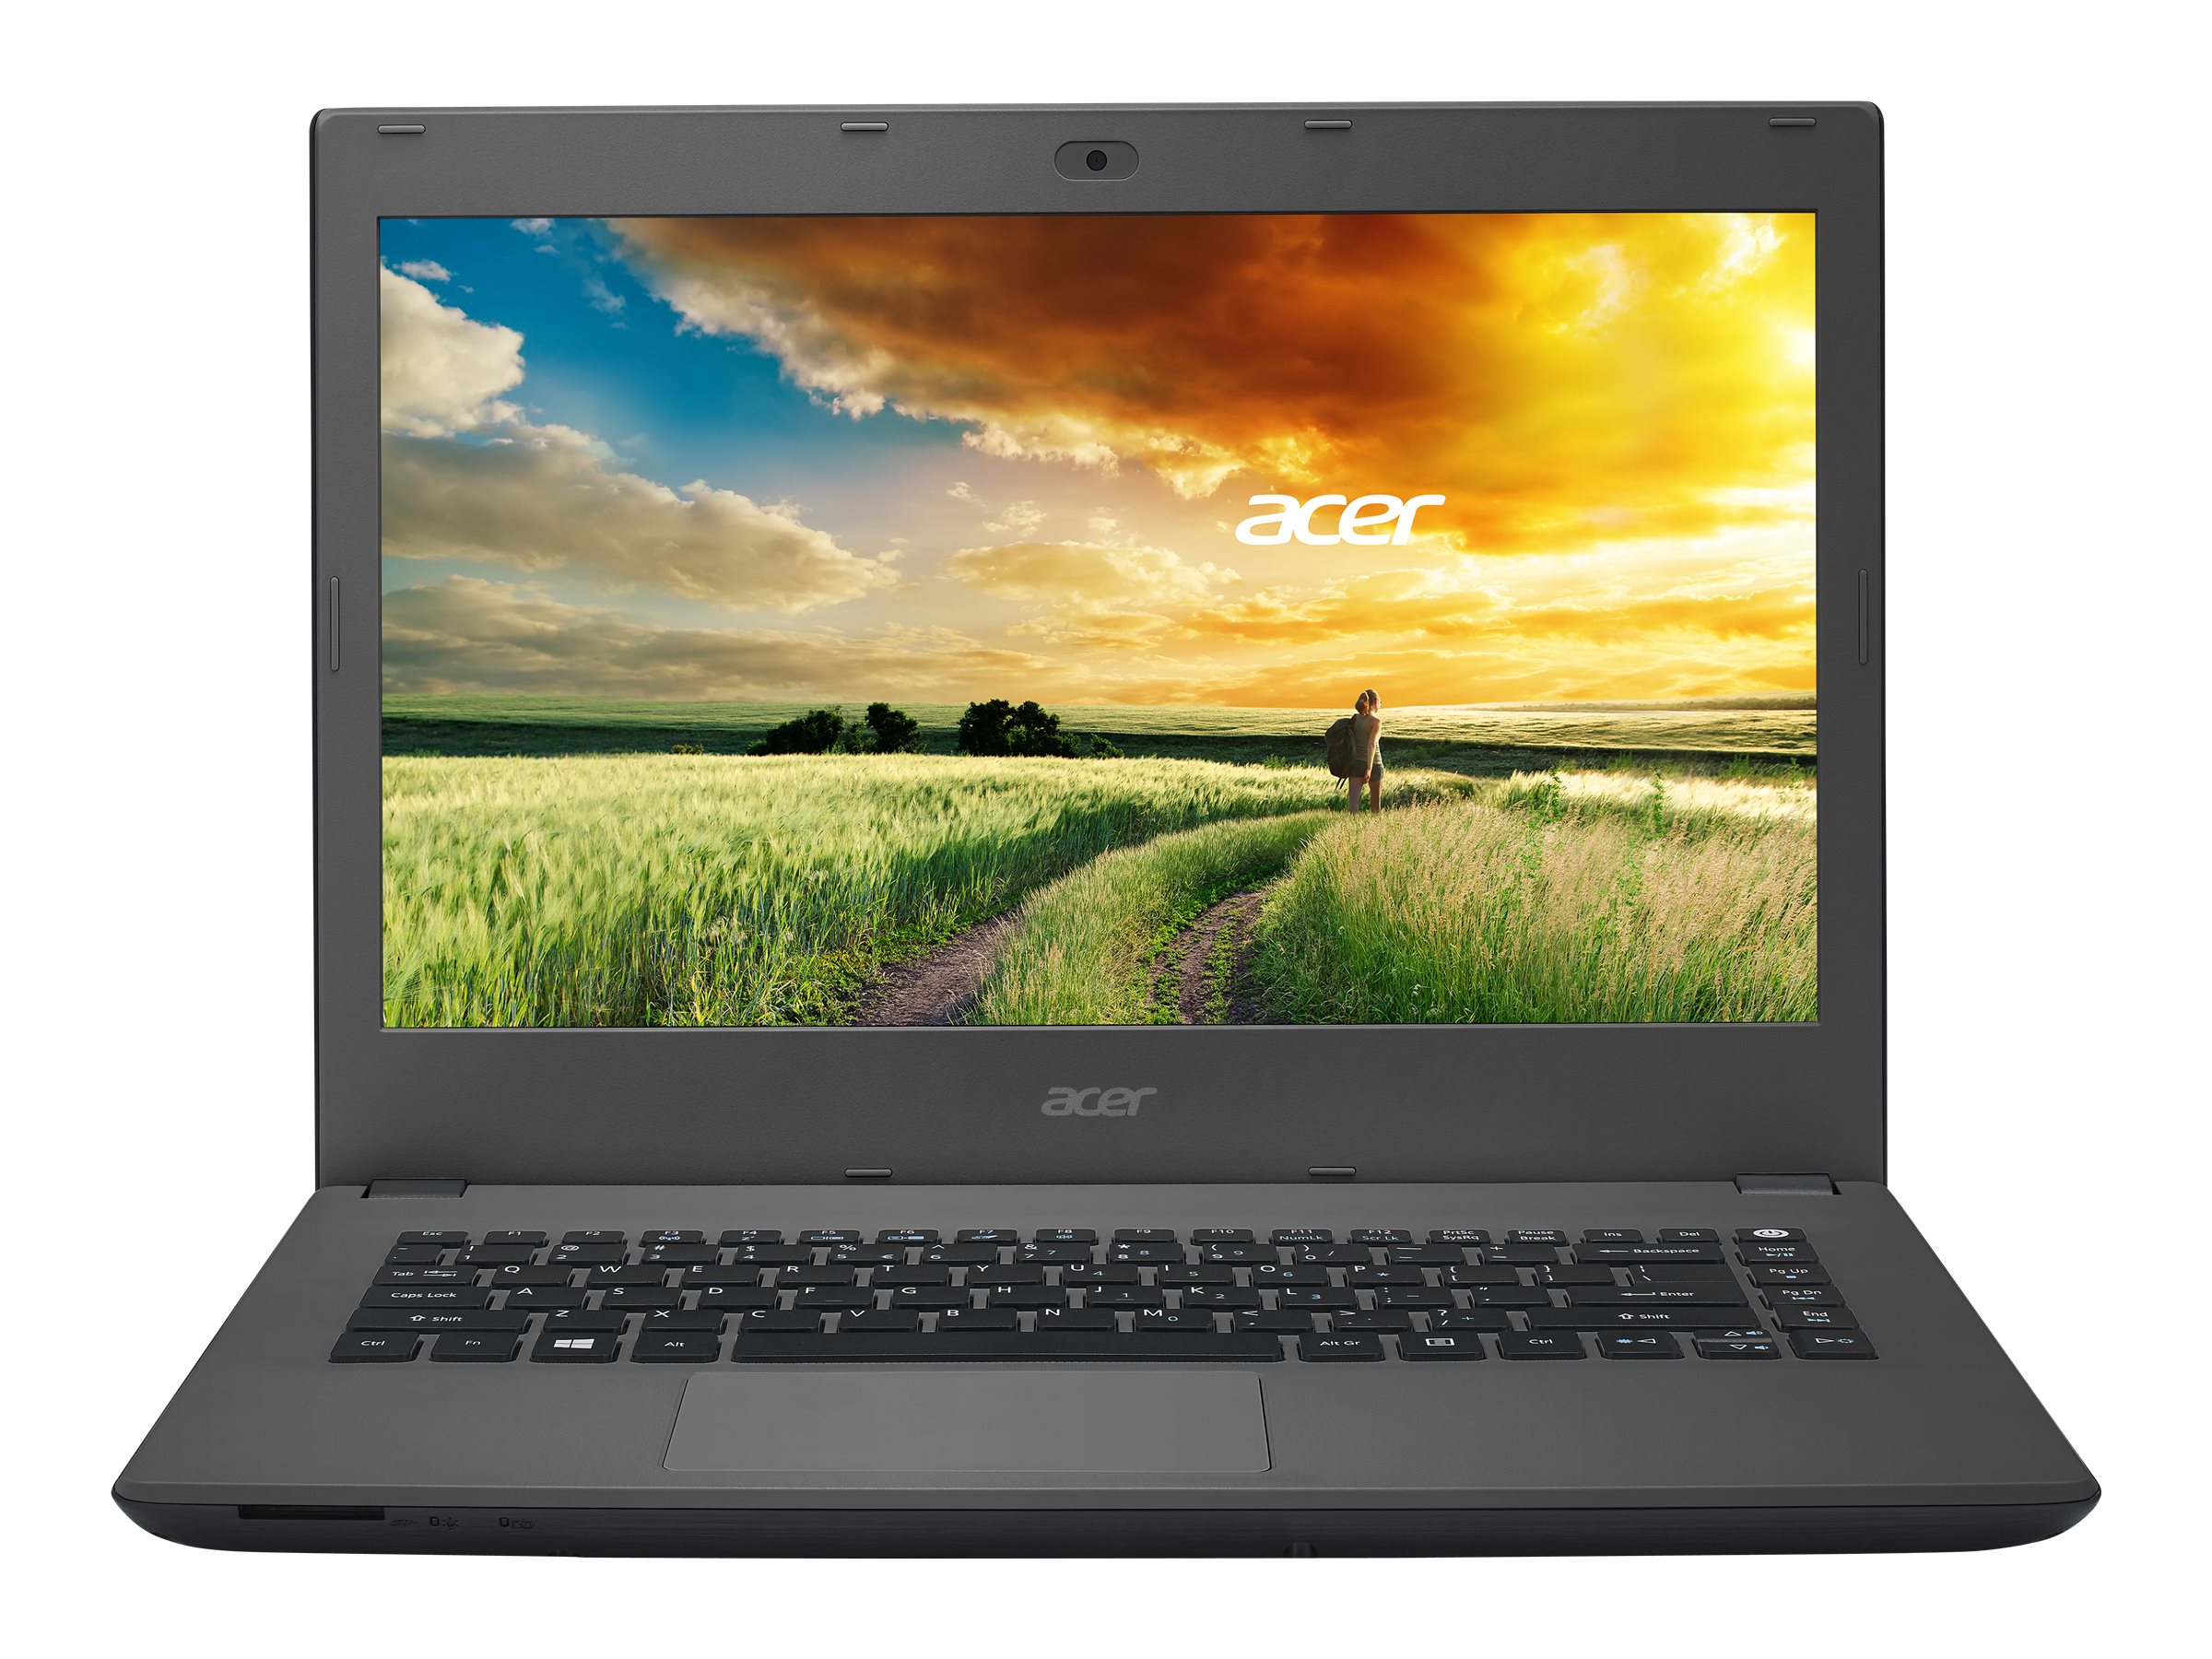 PC 'Acer Aspire GX' é lançado no Brasil com boas especificações e preço  alto 